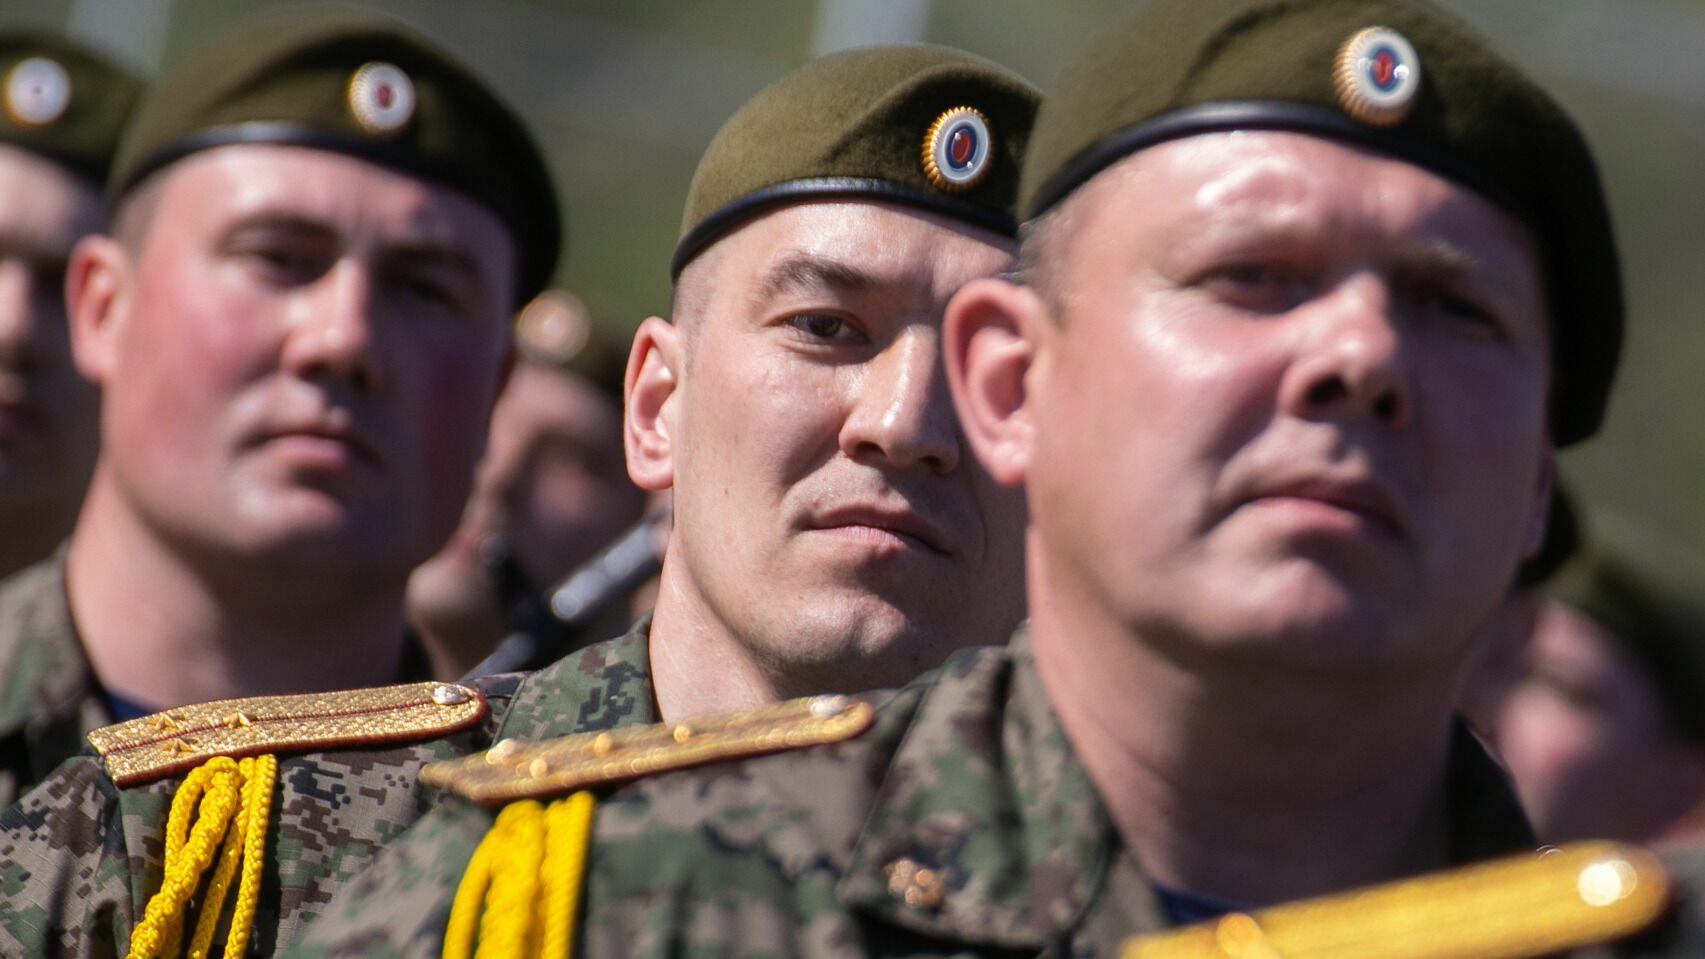 В Казань пришла разнарядка о наборе военнослужащих по контракту